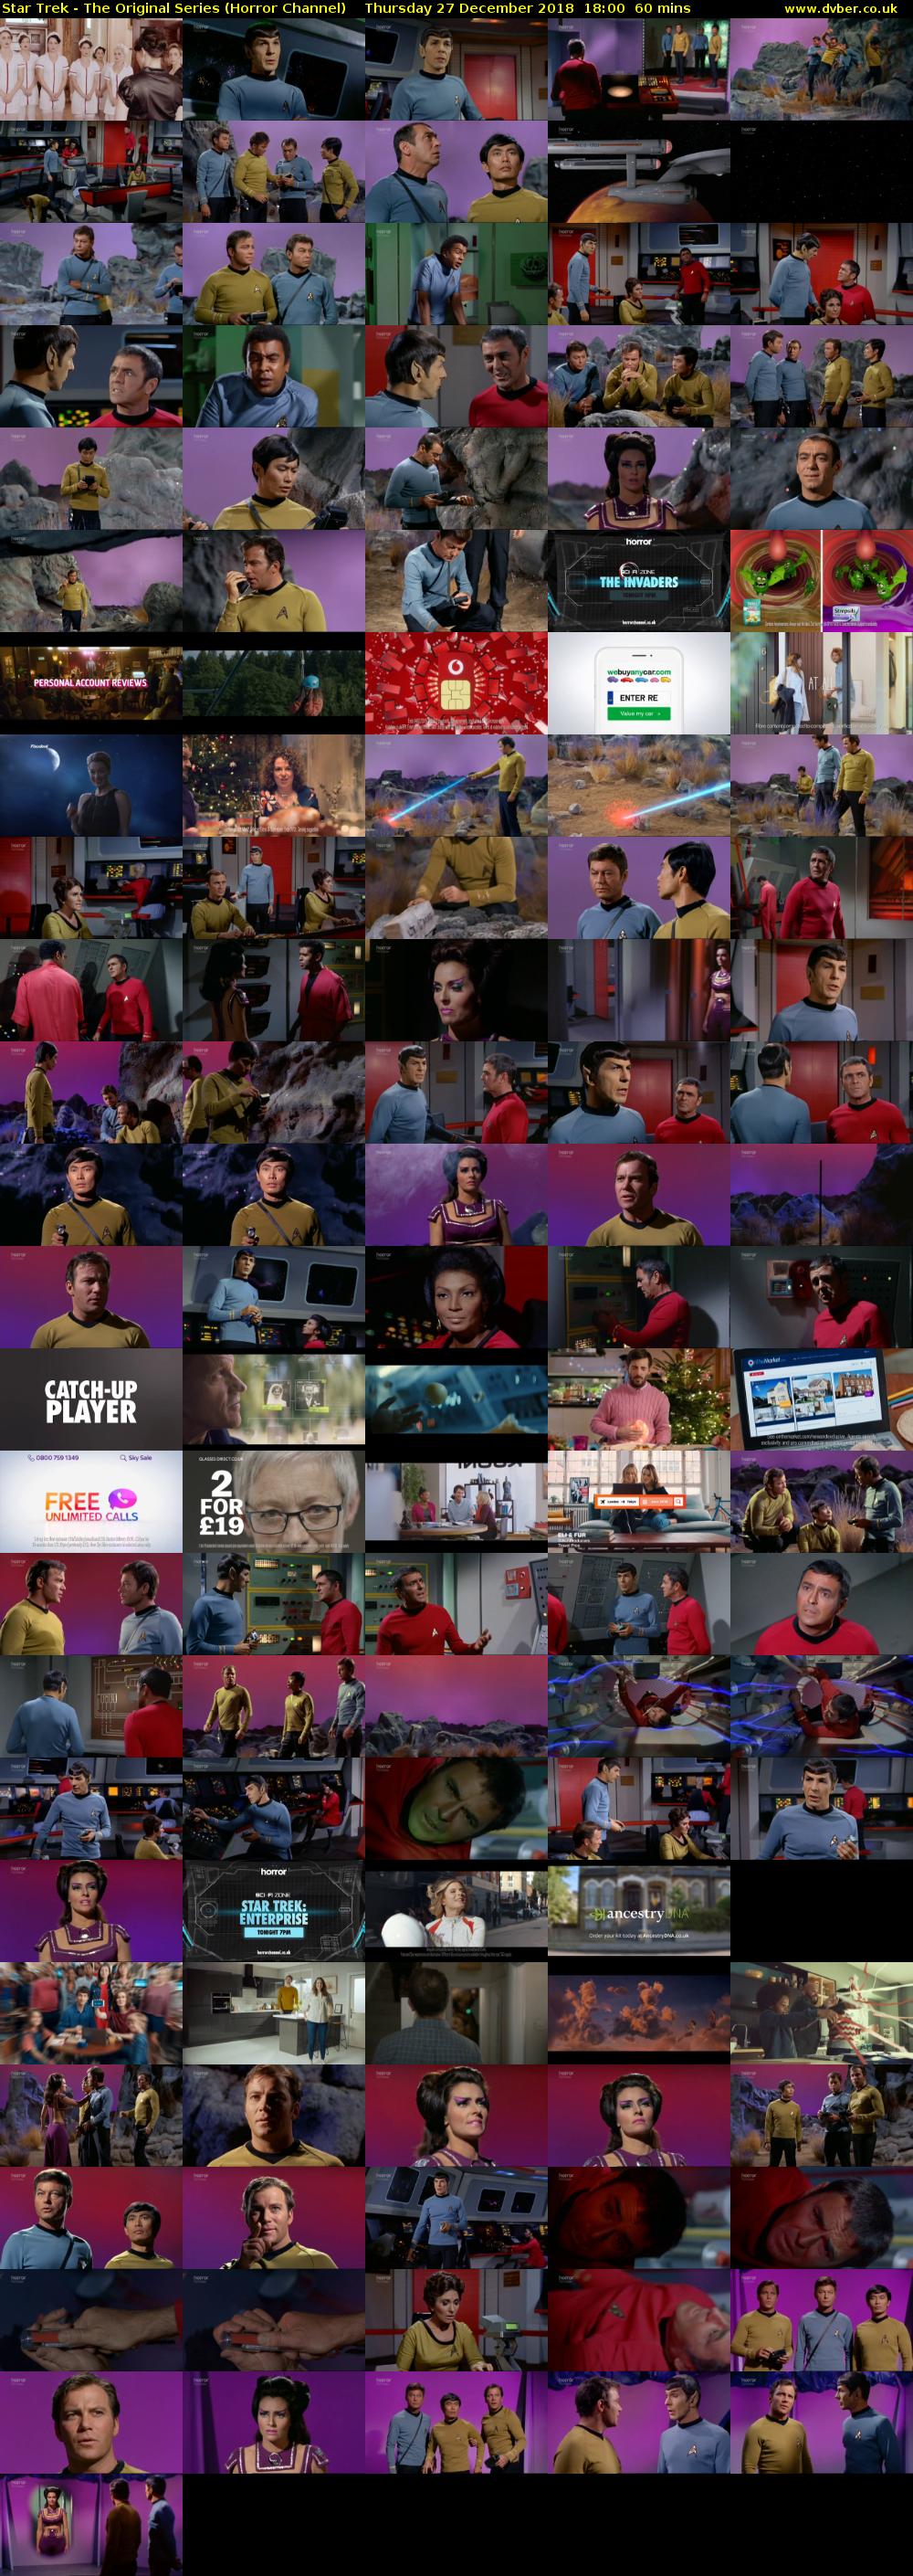 Star Trek - The Original Series (Horror Channel) Thursday 27 December 2018 18:00 - 19:00